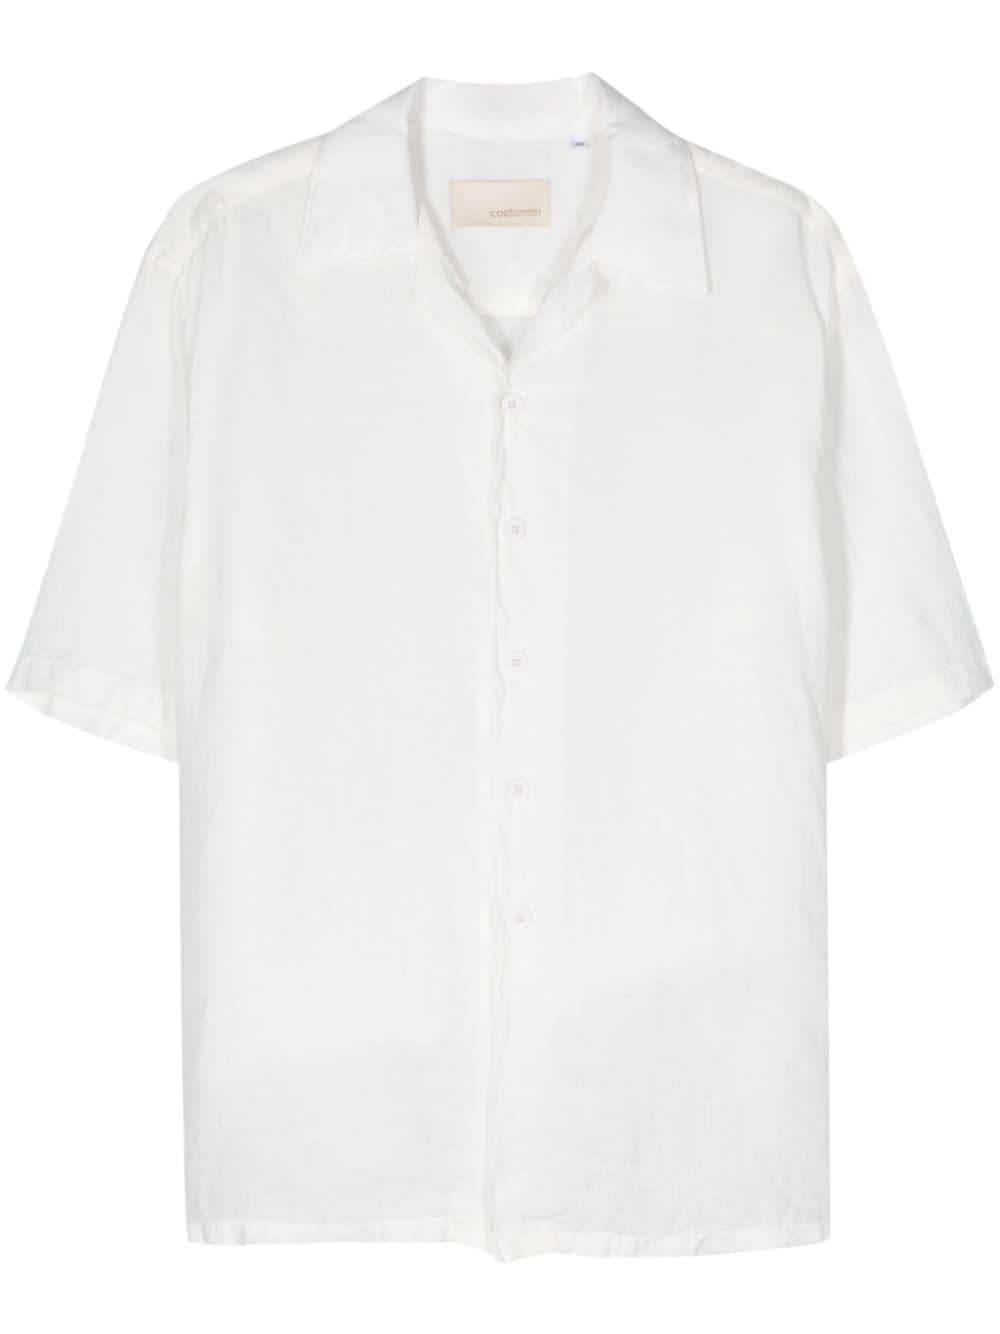 Costumein Robin Linen Shirt In White